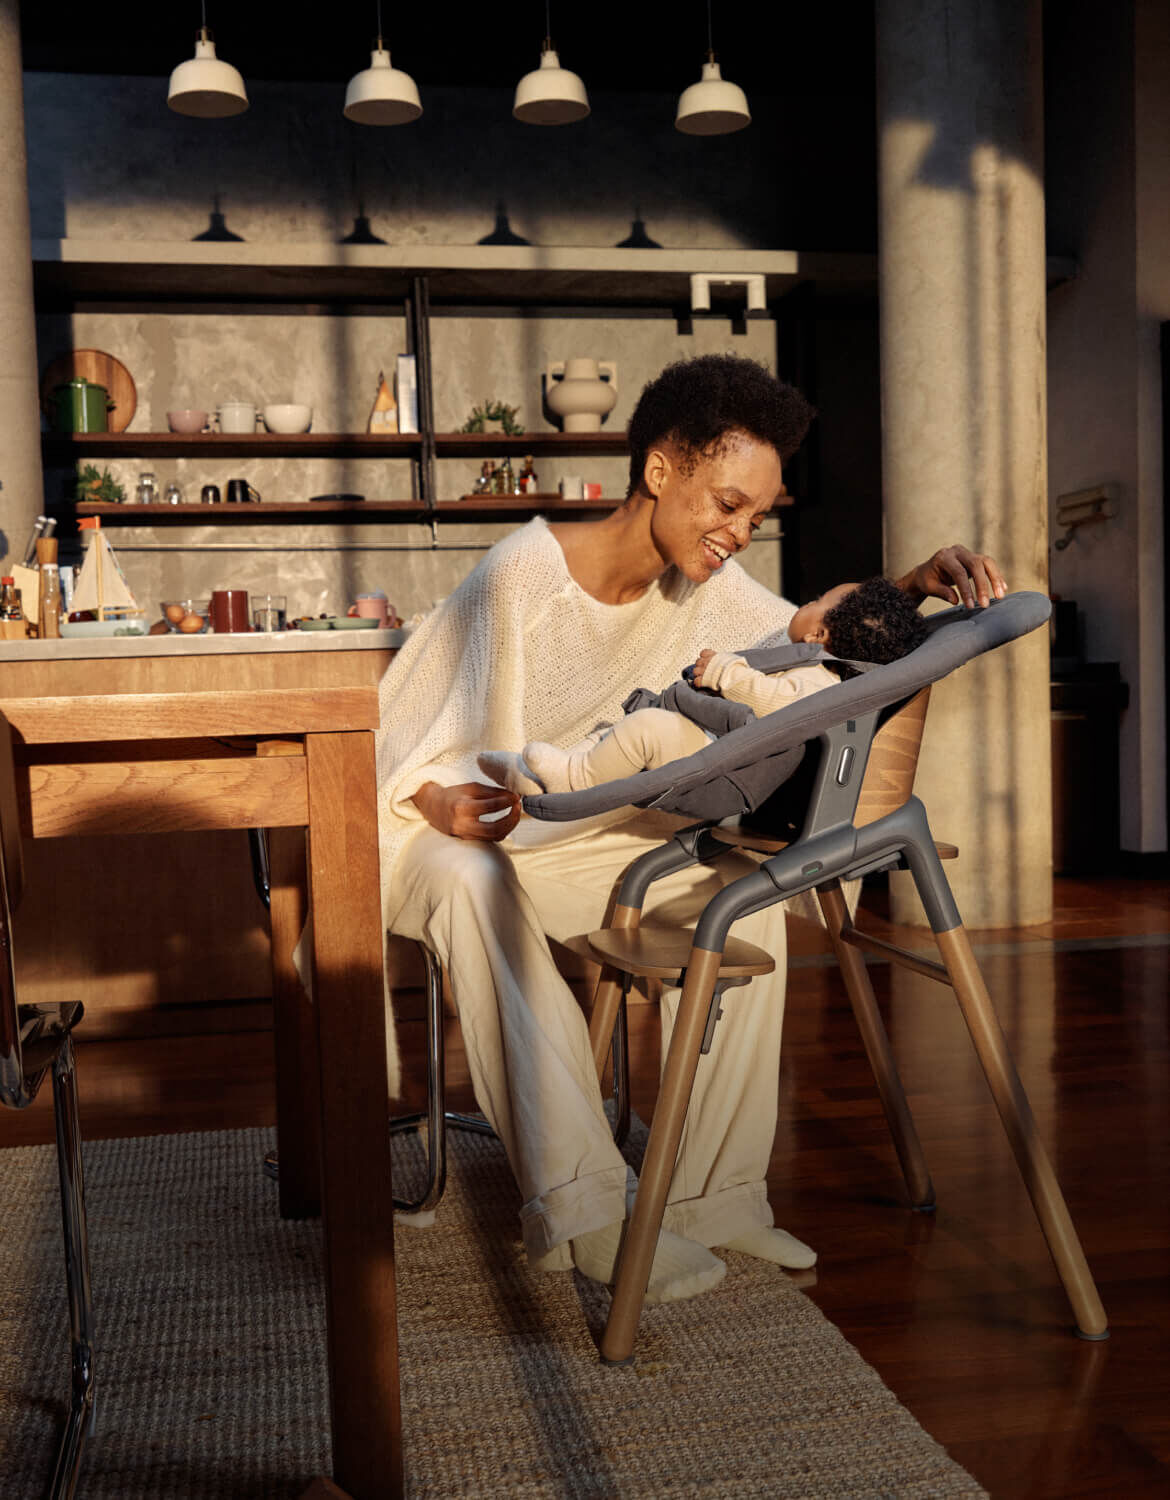 Una mamma in abiti casual gioca con il suo bambino su una sedia evolutiva Bugaboo Giraffe. Sono in una cucina moderna e illuminata da una luce calda.